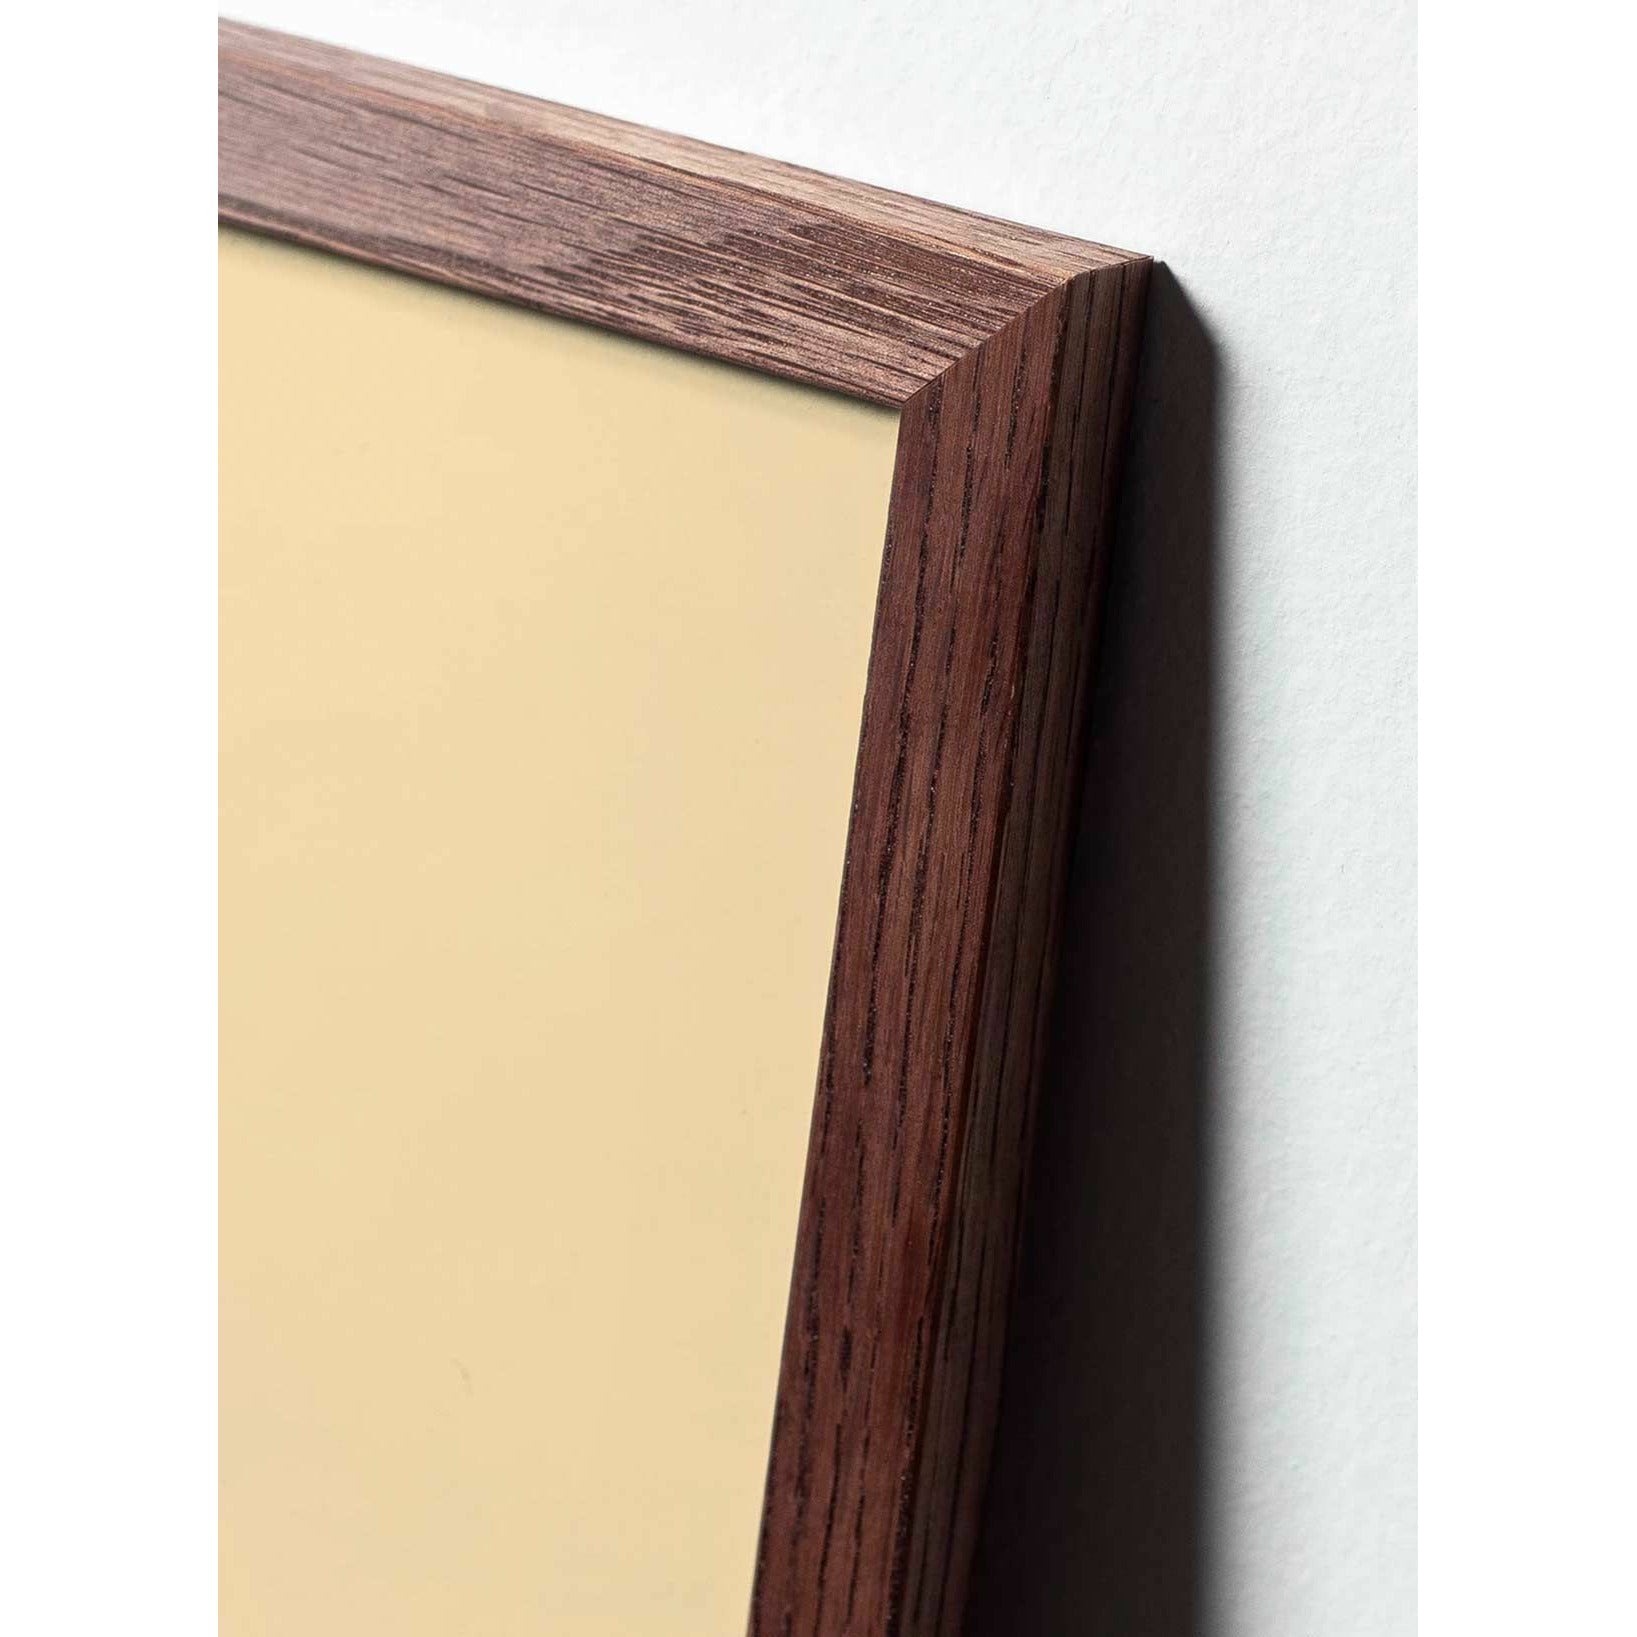 Plakát s labutí linií, rám vyrobený z tmavého dřeva 70x100 cm, bílé pozadí